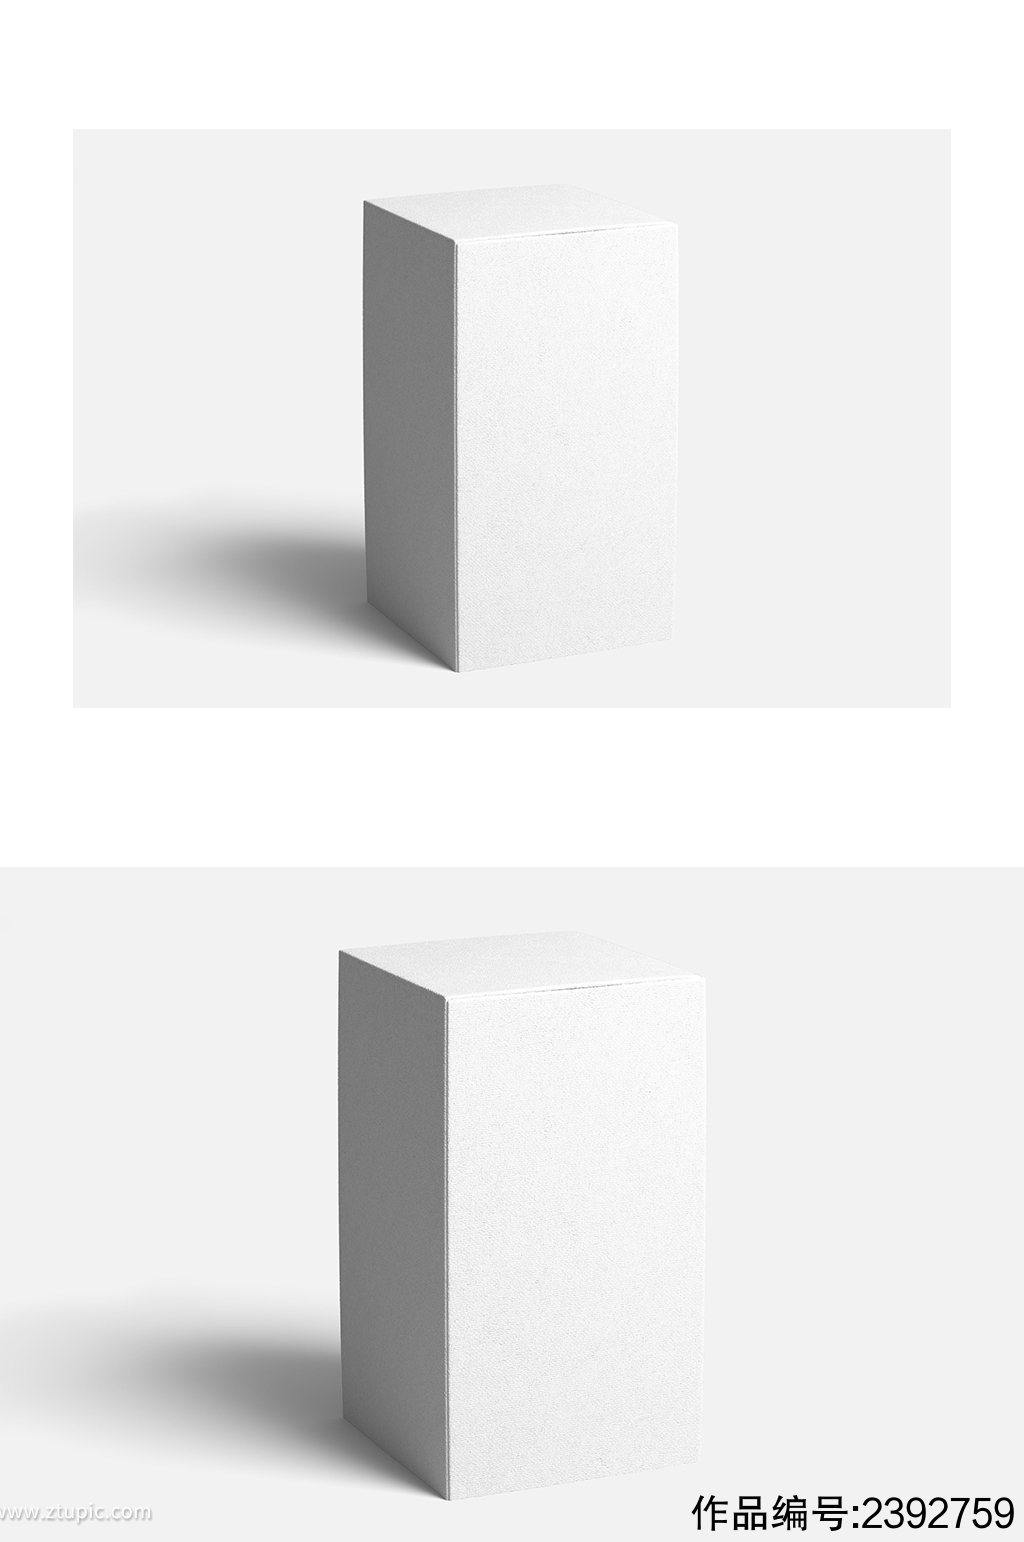 长方体包装盒展示样机素材